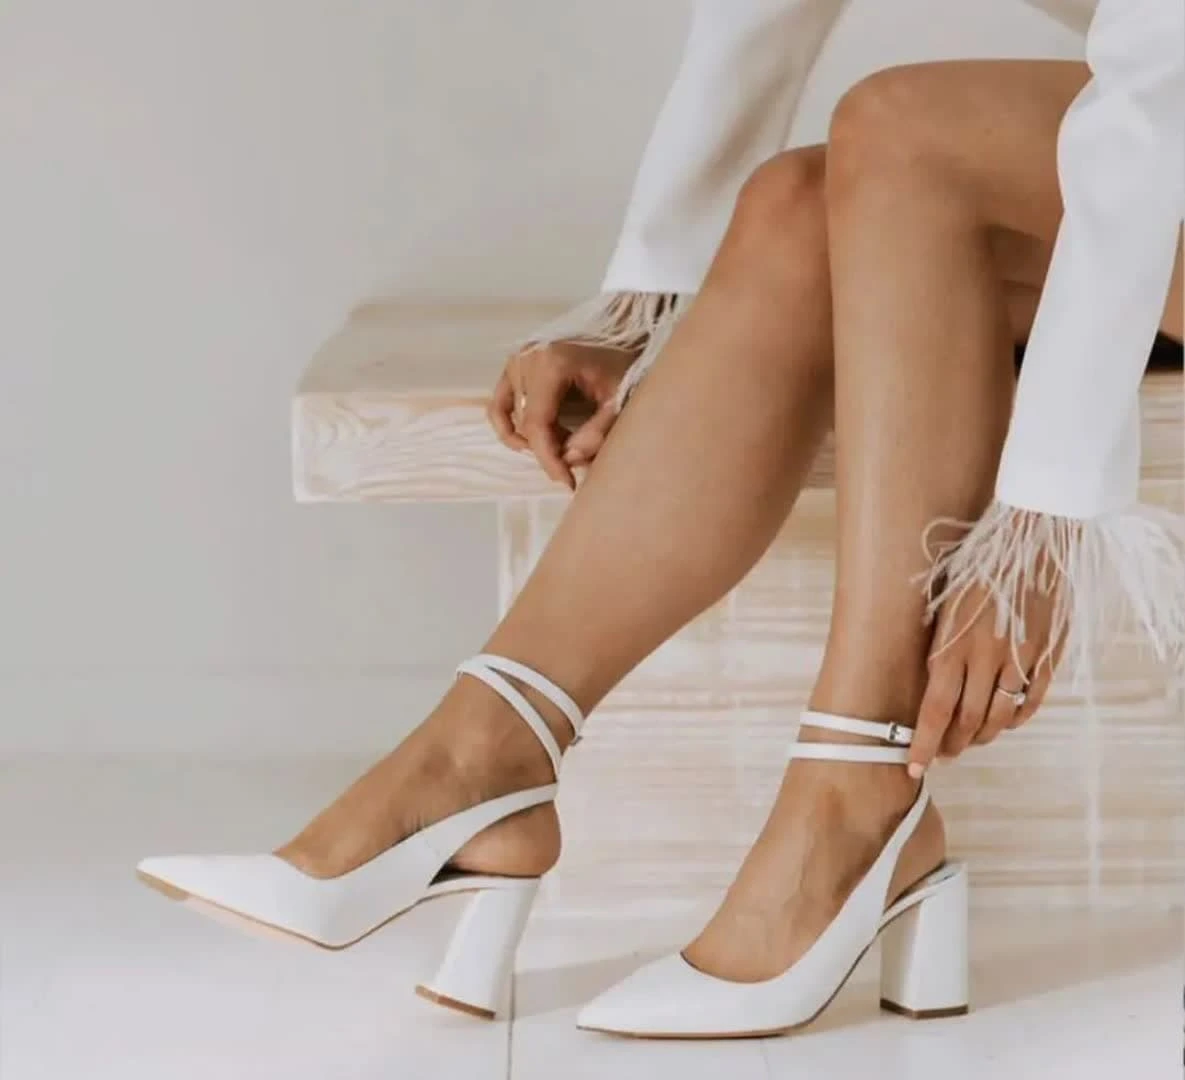 50 مدل کفش عروس جذاب و خیره کننده| گالری کفش عروس آفوربیا